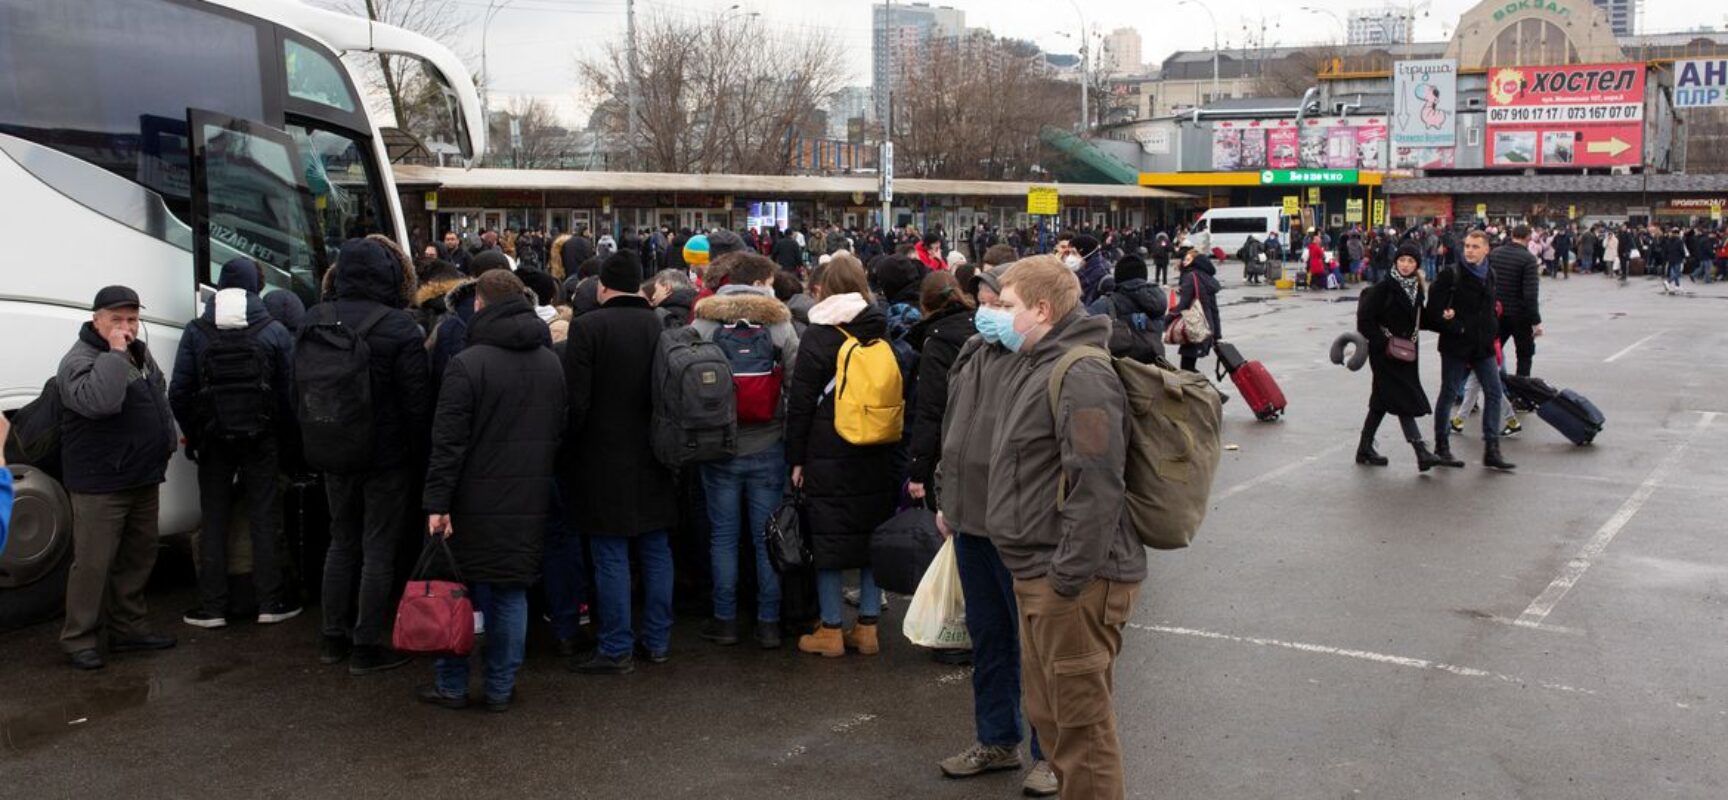 Número de refugiados ucranianos pode chegar a 1,5 milhão